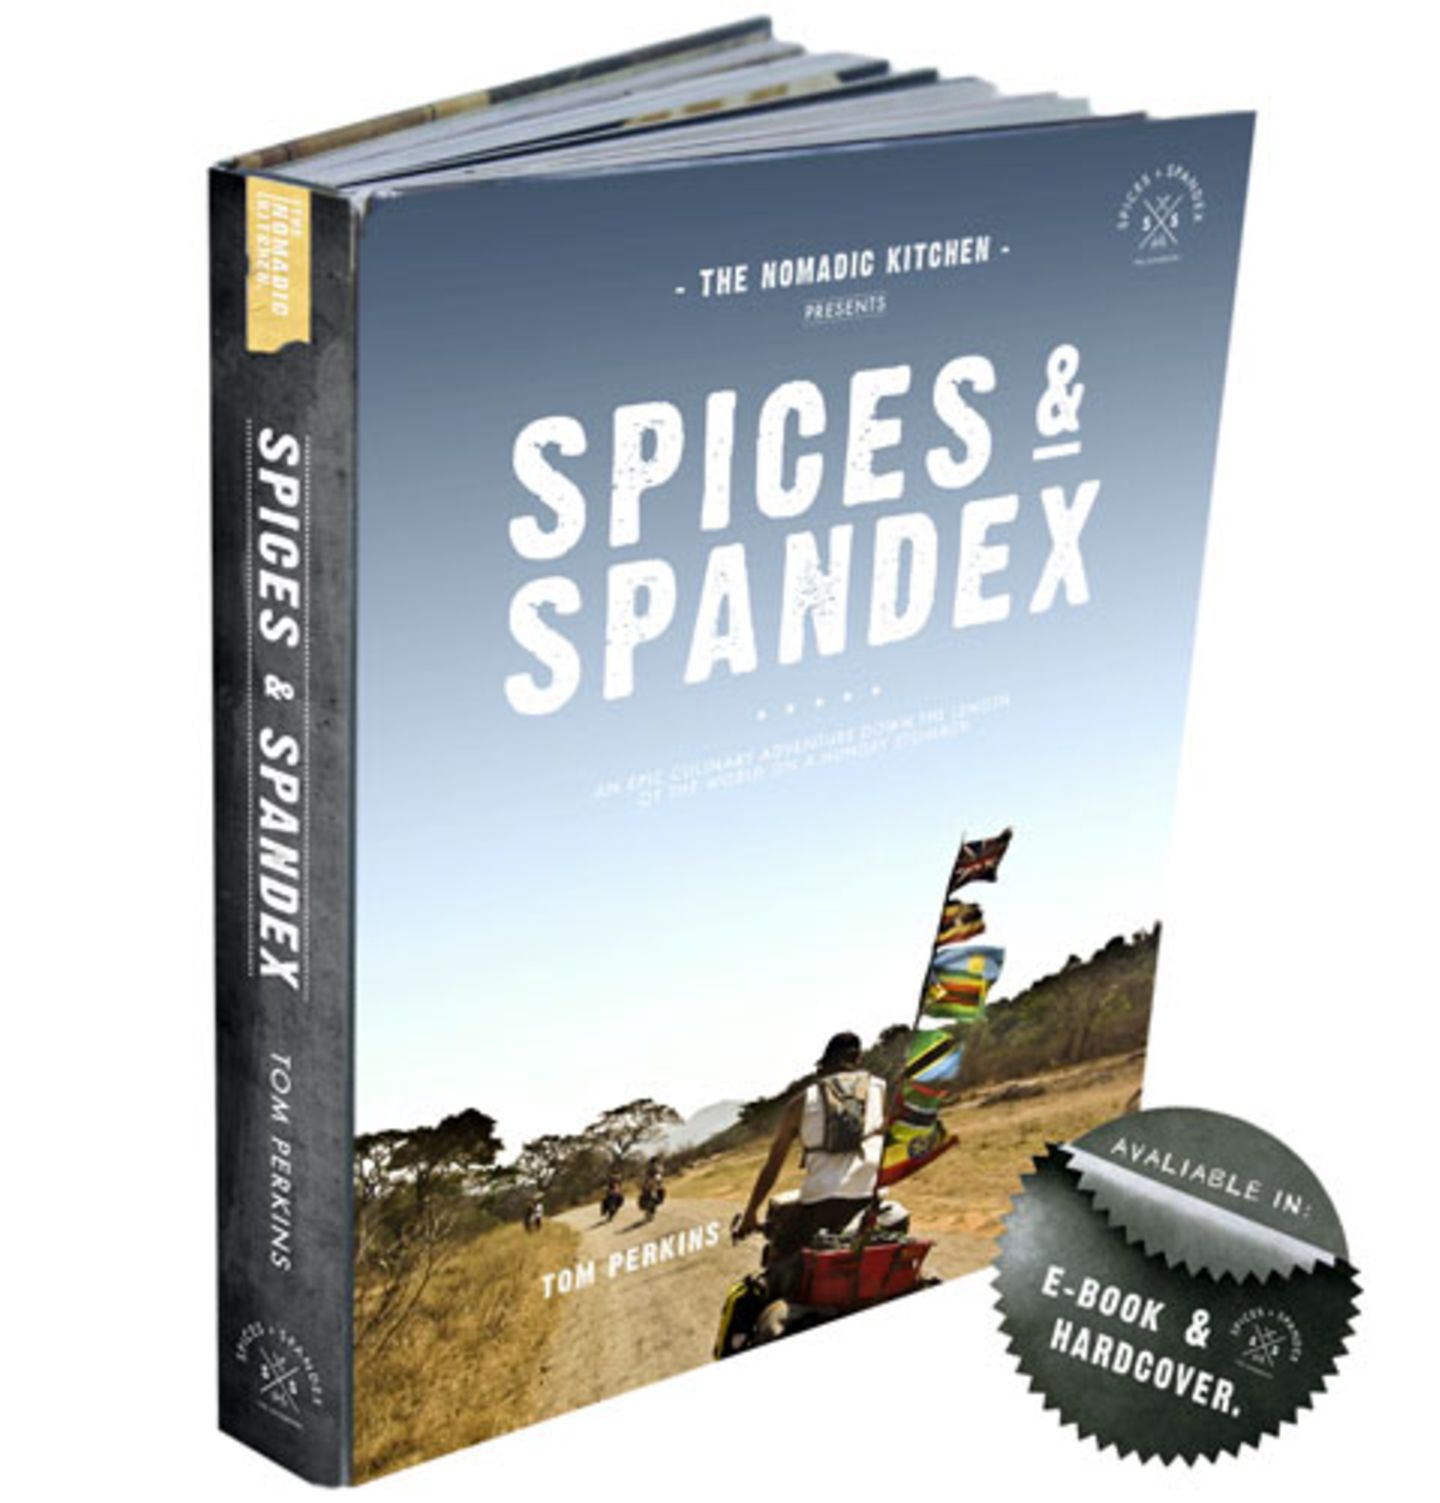 Das Kochbuch und Reise-Tagebuch "Spices & Spandex" enthält 65 Rezepte aus 26 Ländern - und wunderbare Bilder einer abenteuerlichen kulinarischen Reise einmal der Länge nach durch die Welt. Es erscheint im November 2014 als E-Book und als Hardcover - hier kann man das Buch vorbestellen.